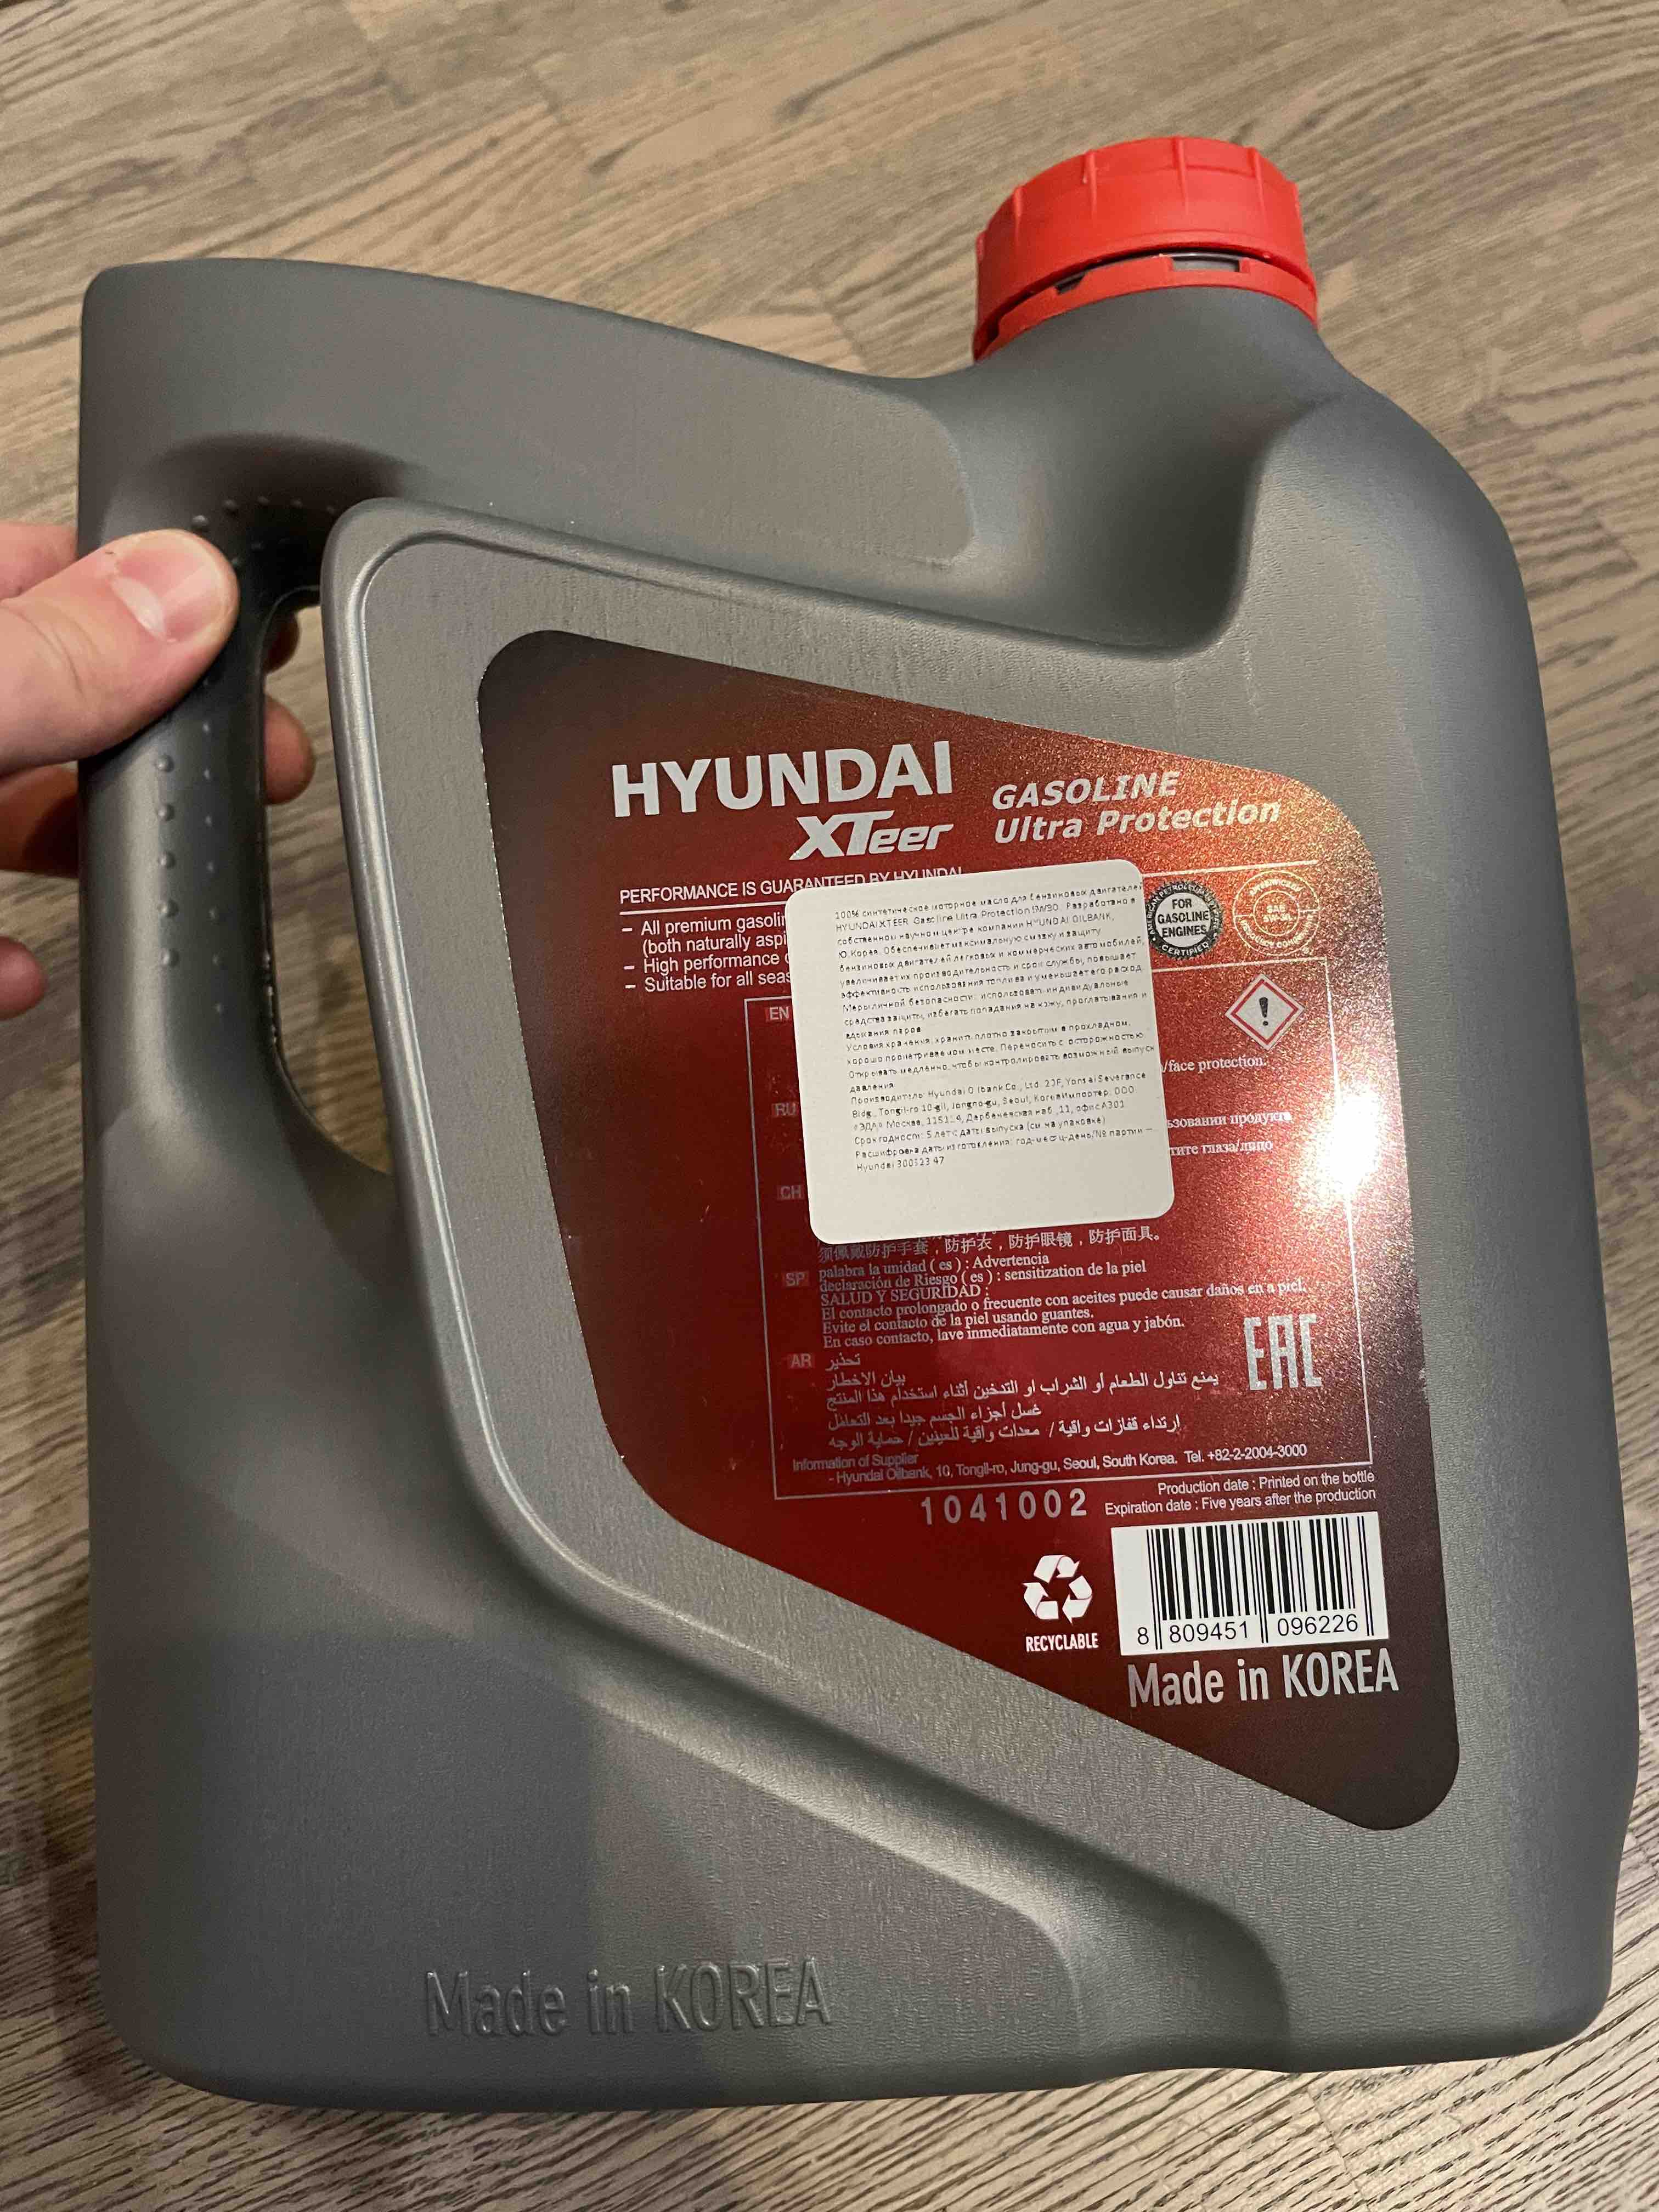 Hyundai xteer gasoline 5w 30